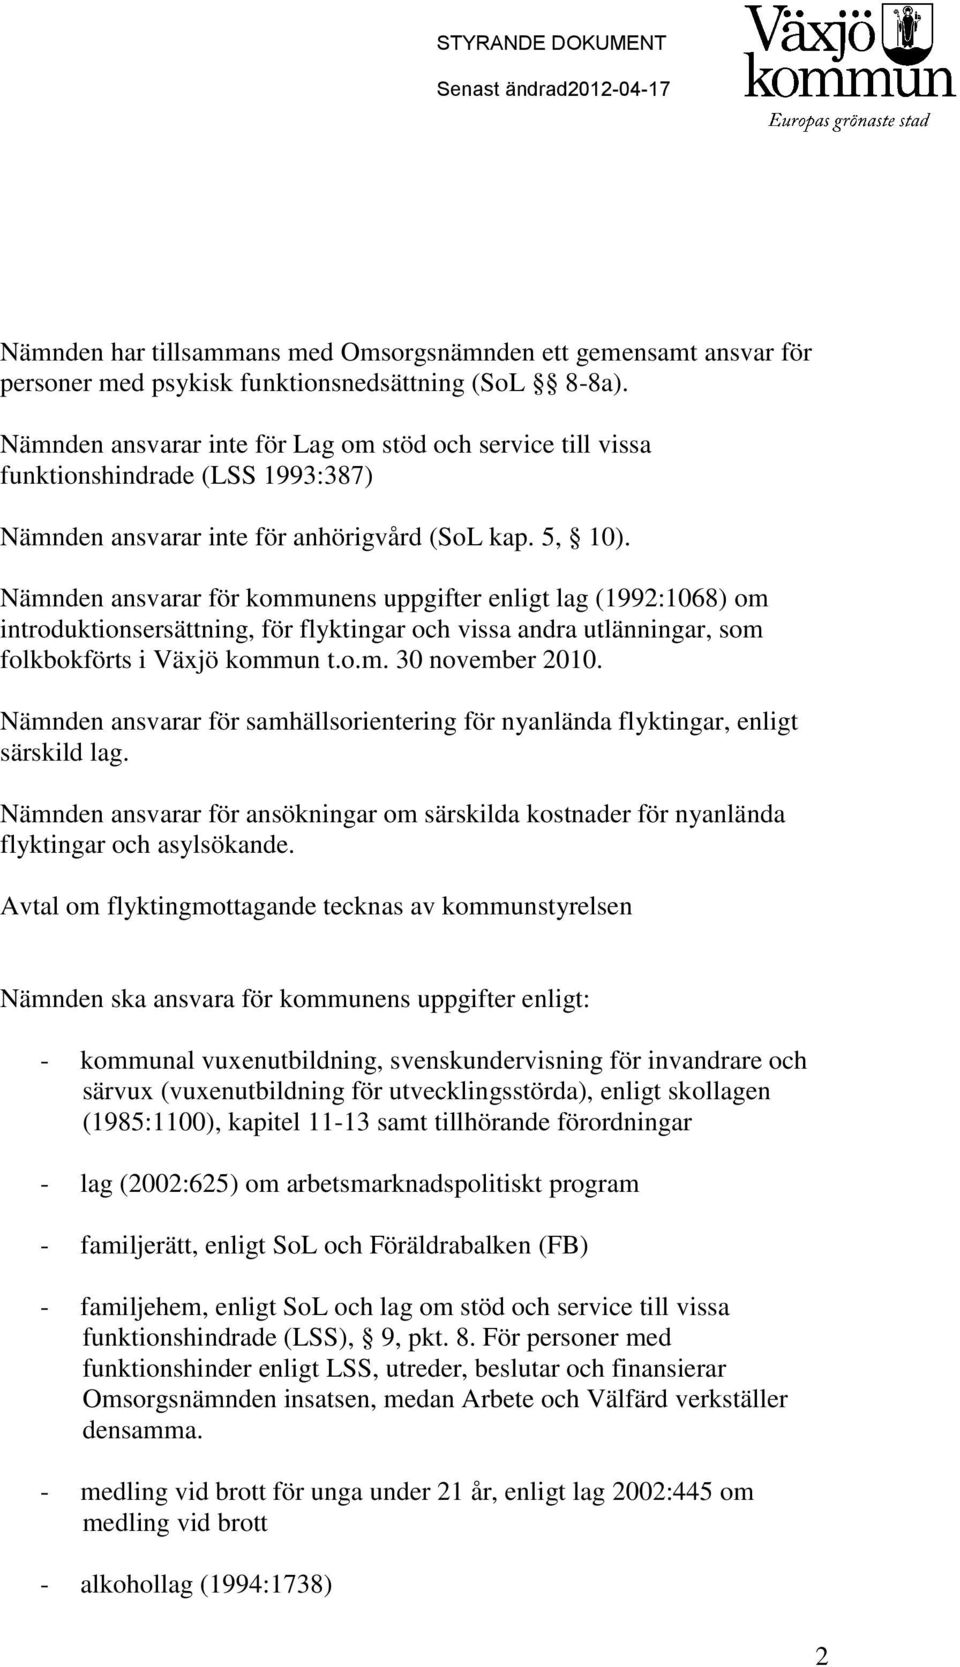 Nämnden ansvarar för kommunens uppgifter enligt lag (1992:1068) om introduktionsersättning, för flyktingar och vissa andra utlänningar, som folkbokförts i Växjö kommun t.o.m. 30 november 2010.